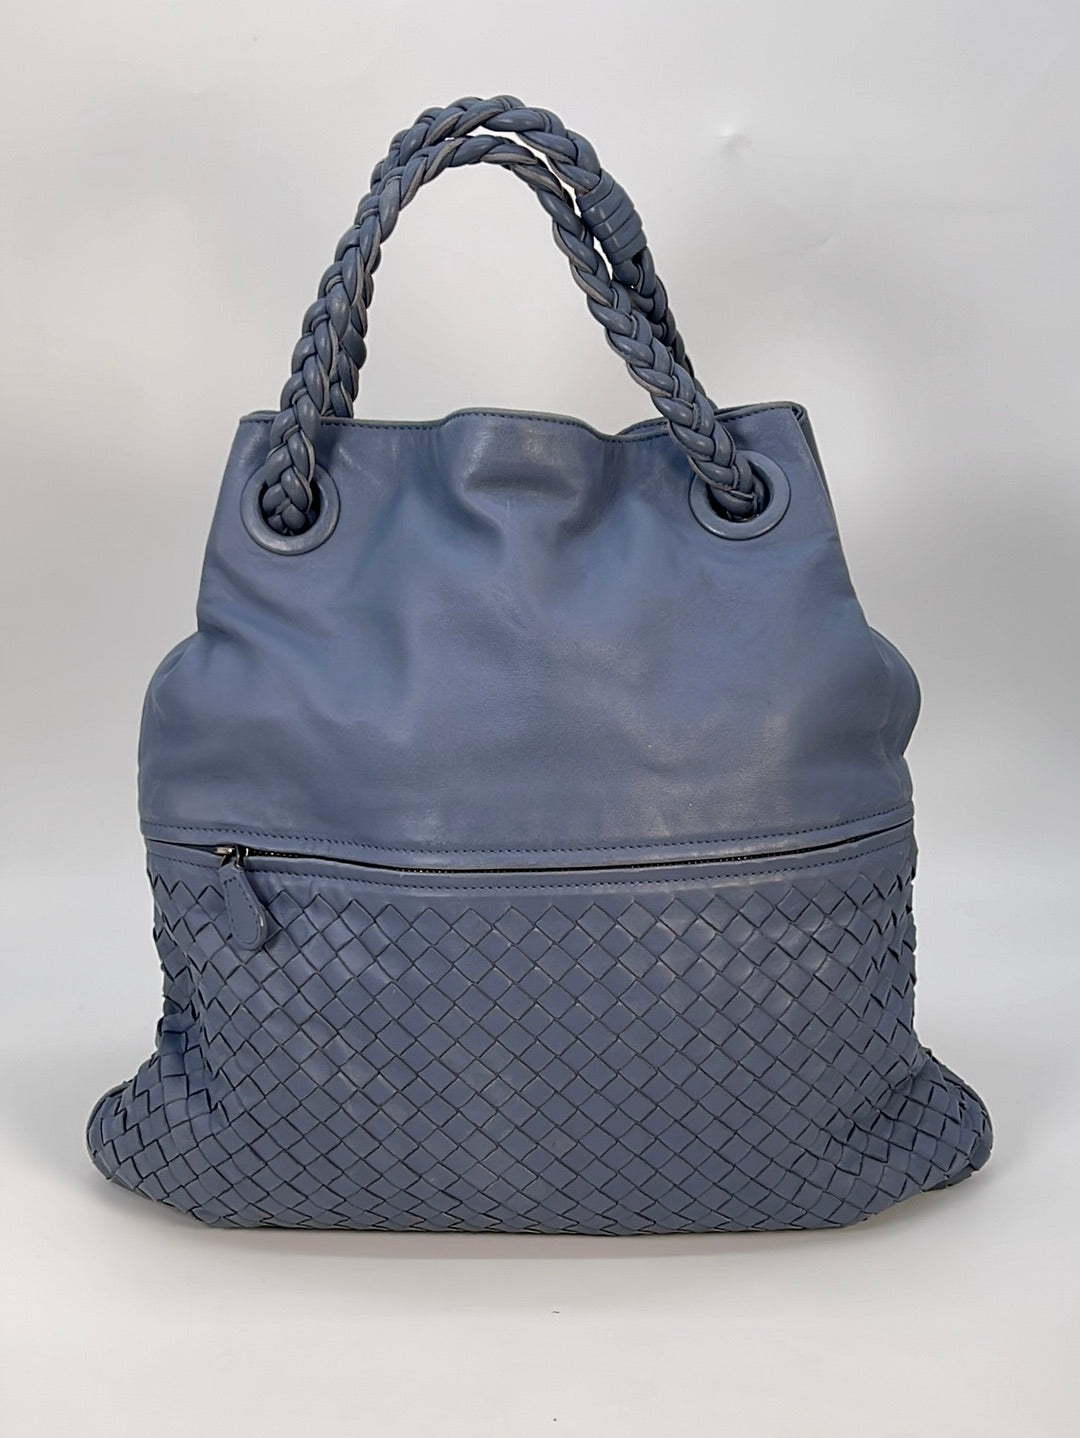 Preloved Bottega Veneta Intrecciato Blue Leather Bucket Hobo Bag B01444334K 012523